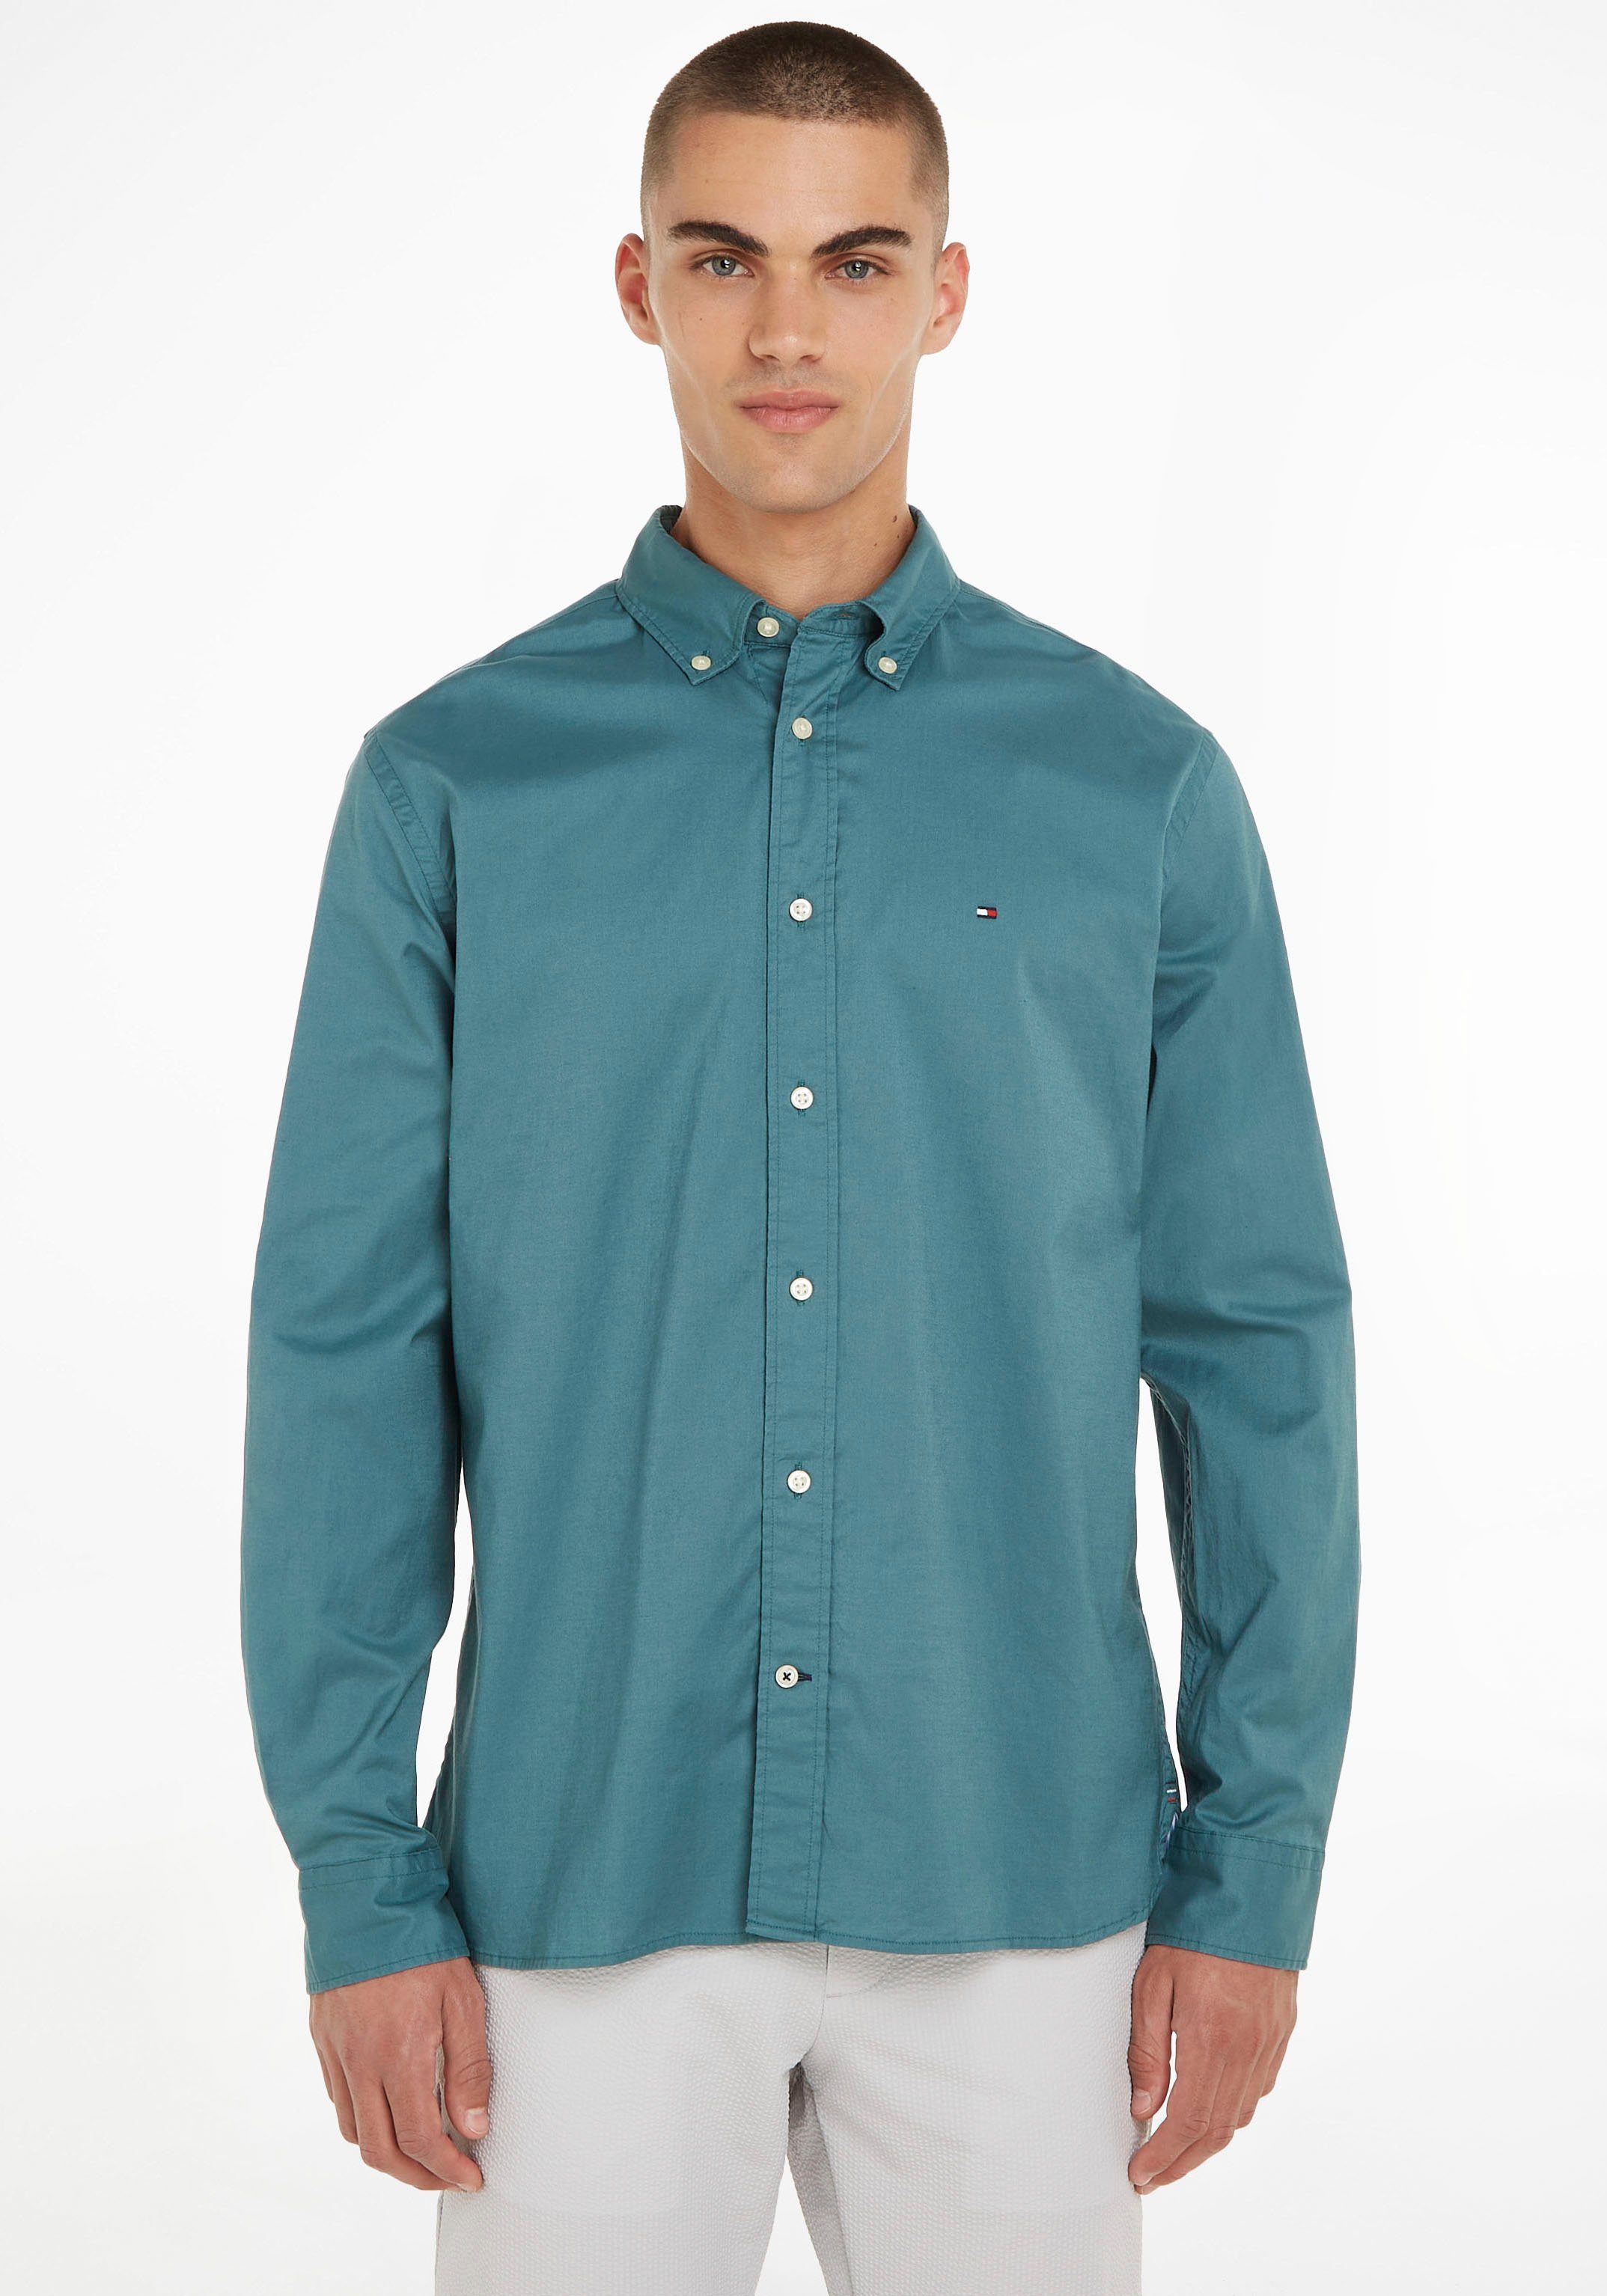 Grüne Tommy Hilfiger Hemden online kaufen OTTO für Herren 